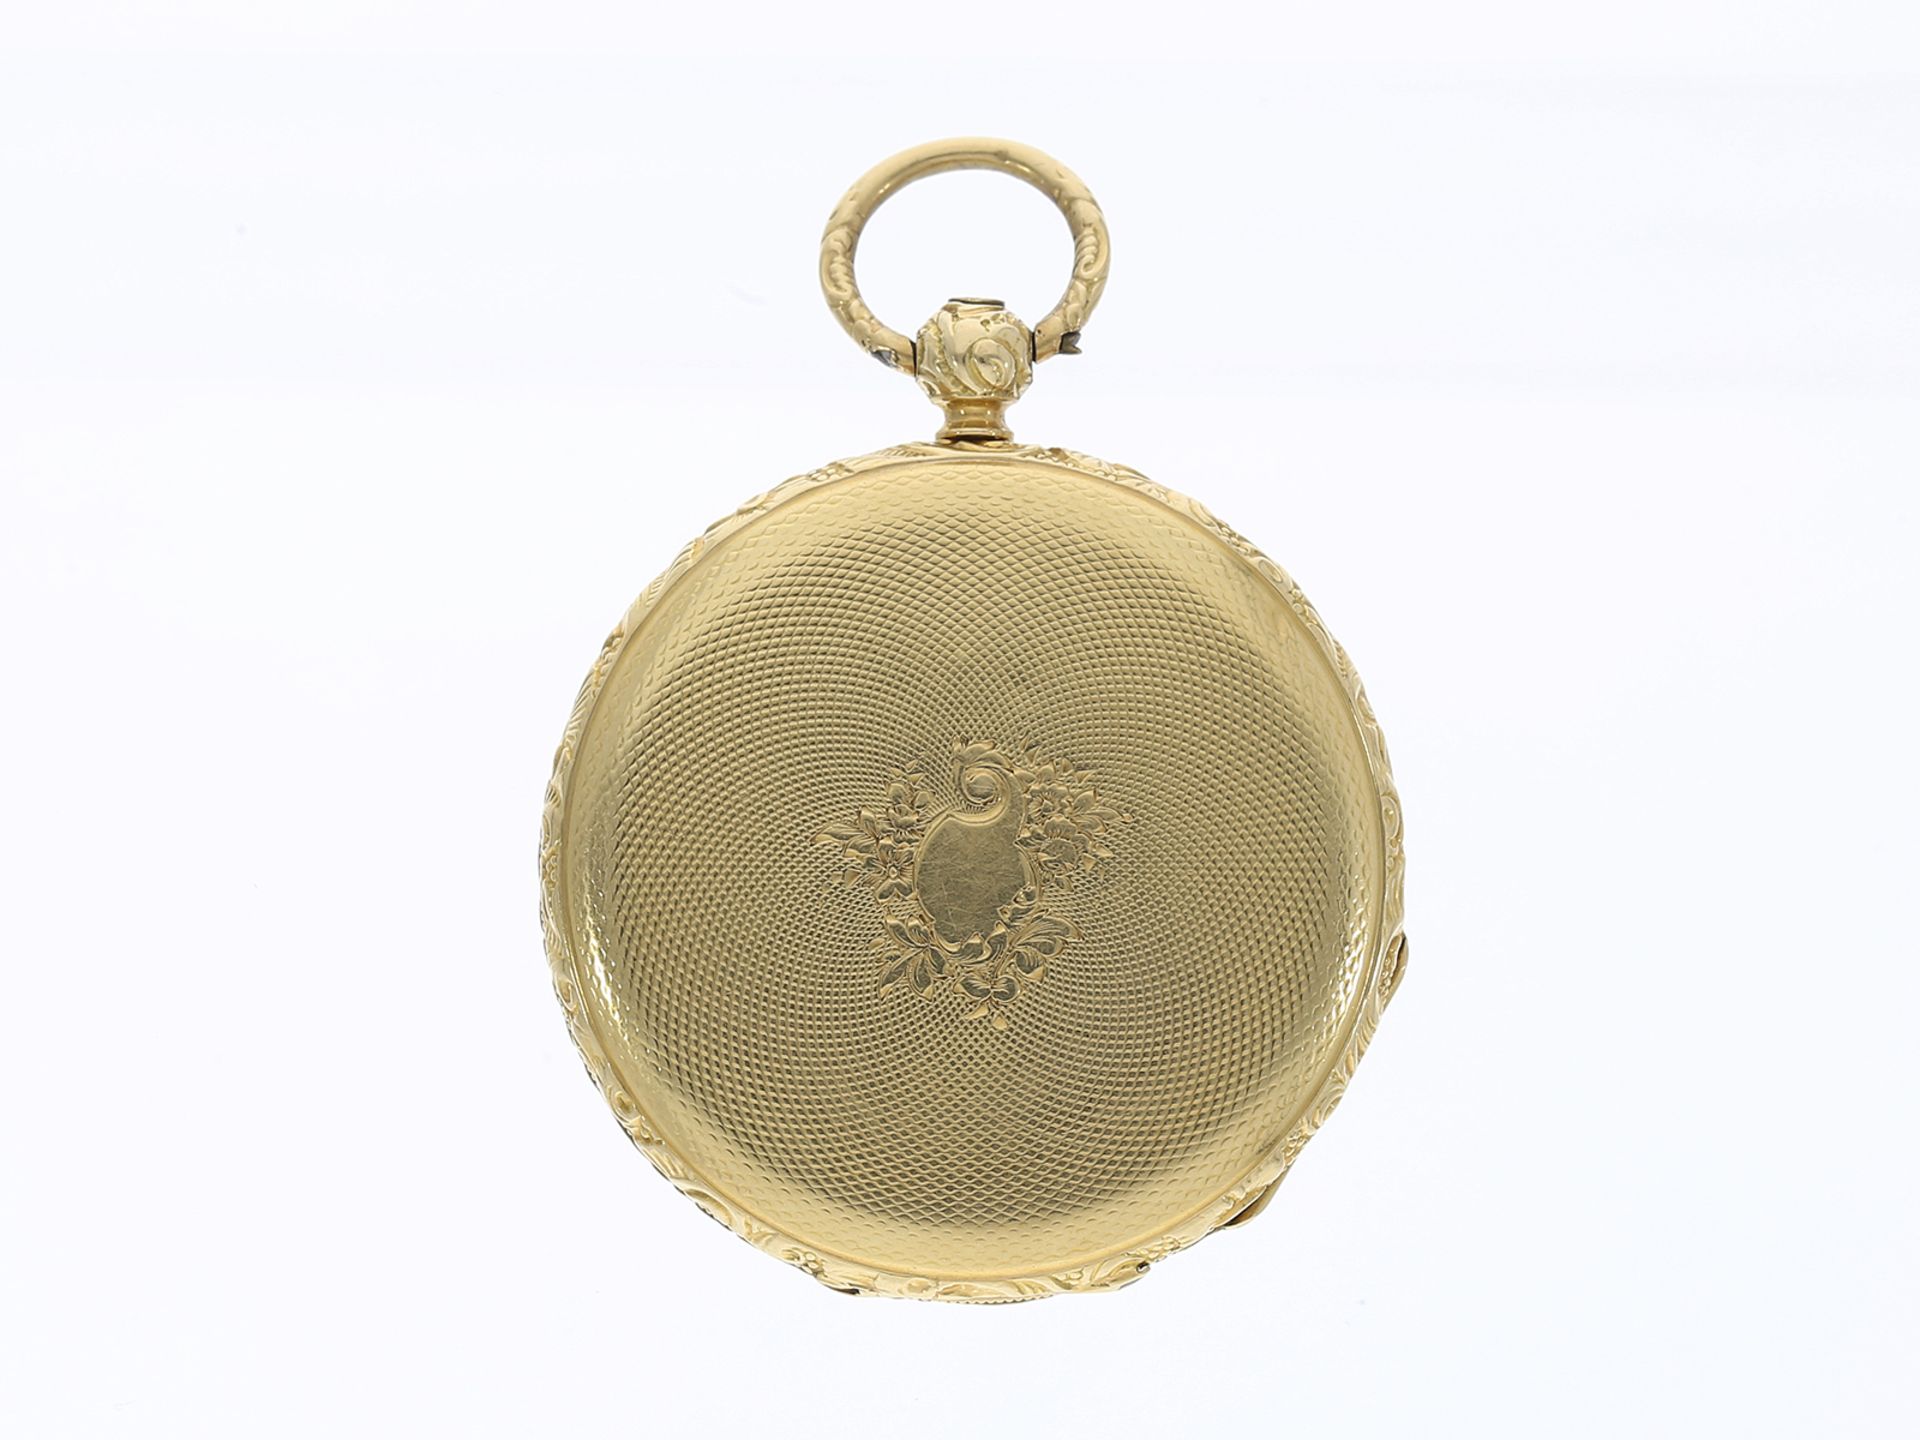 Taschenuhr: feine Lepine, eine der frühesten Taschenuhren von Piguet Geneve, um 1850 - Image 2 of 3